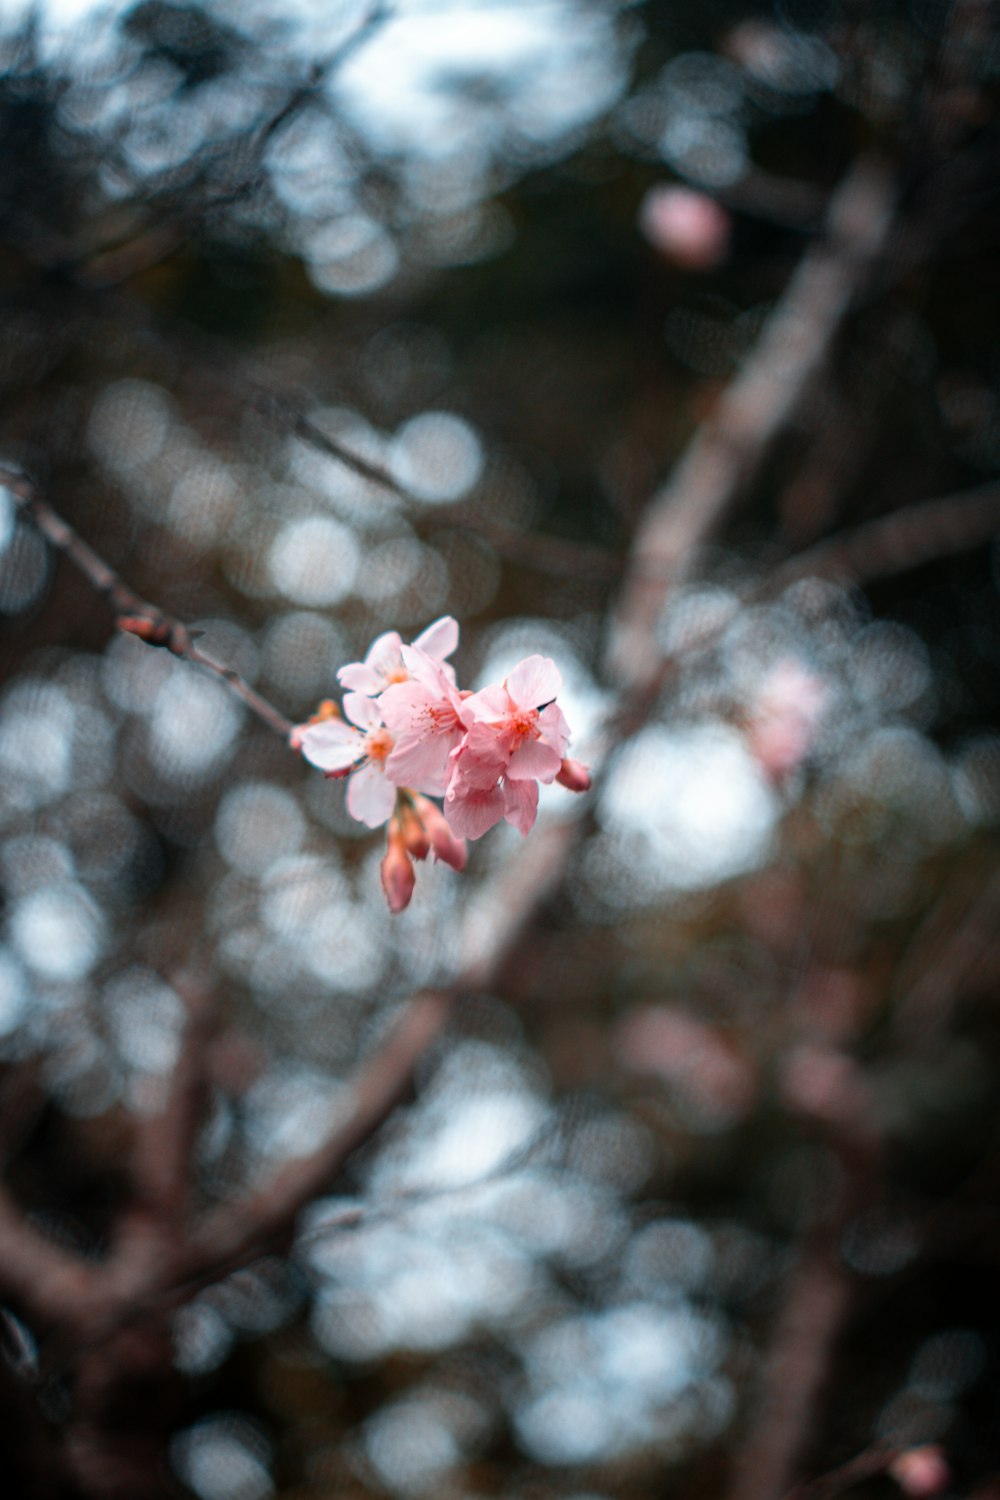 クローズアップ写真のピンクの桜